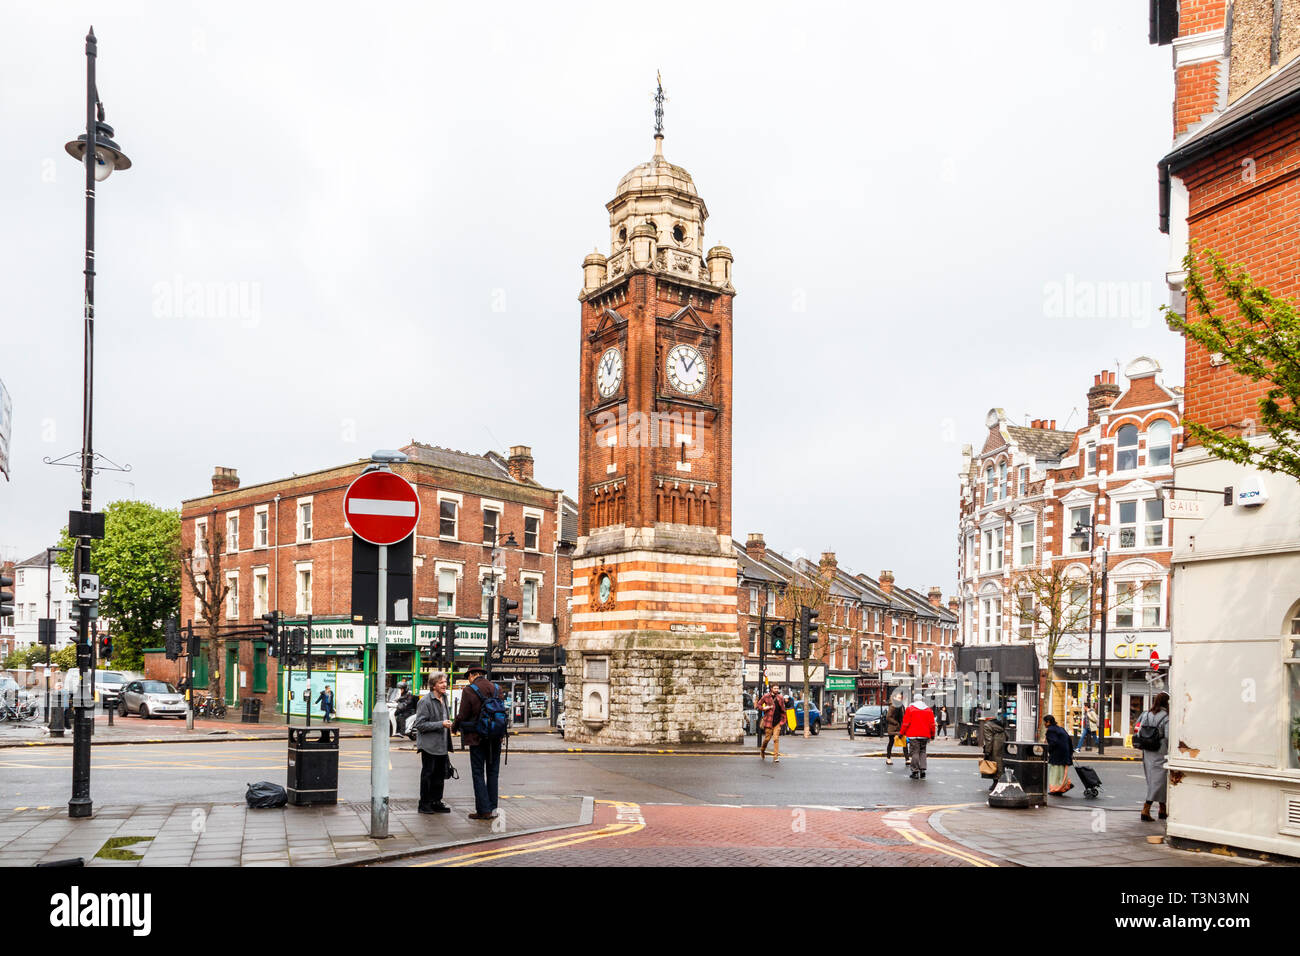 La tour de l'horloge à Crouch End, Londres, UK, érigé en 1895 dans 'l'appréciation et la reconnaissance des services publics de l' Lecteur Henry Williams (1822-97) Banque D'Images